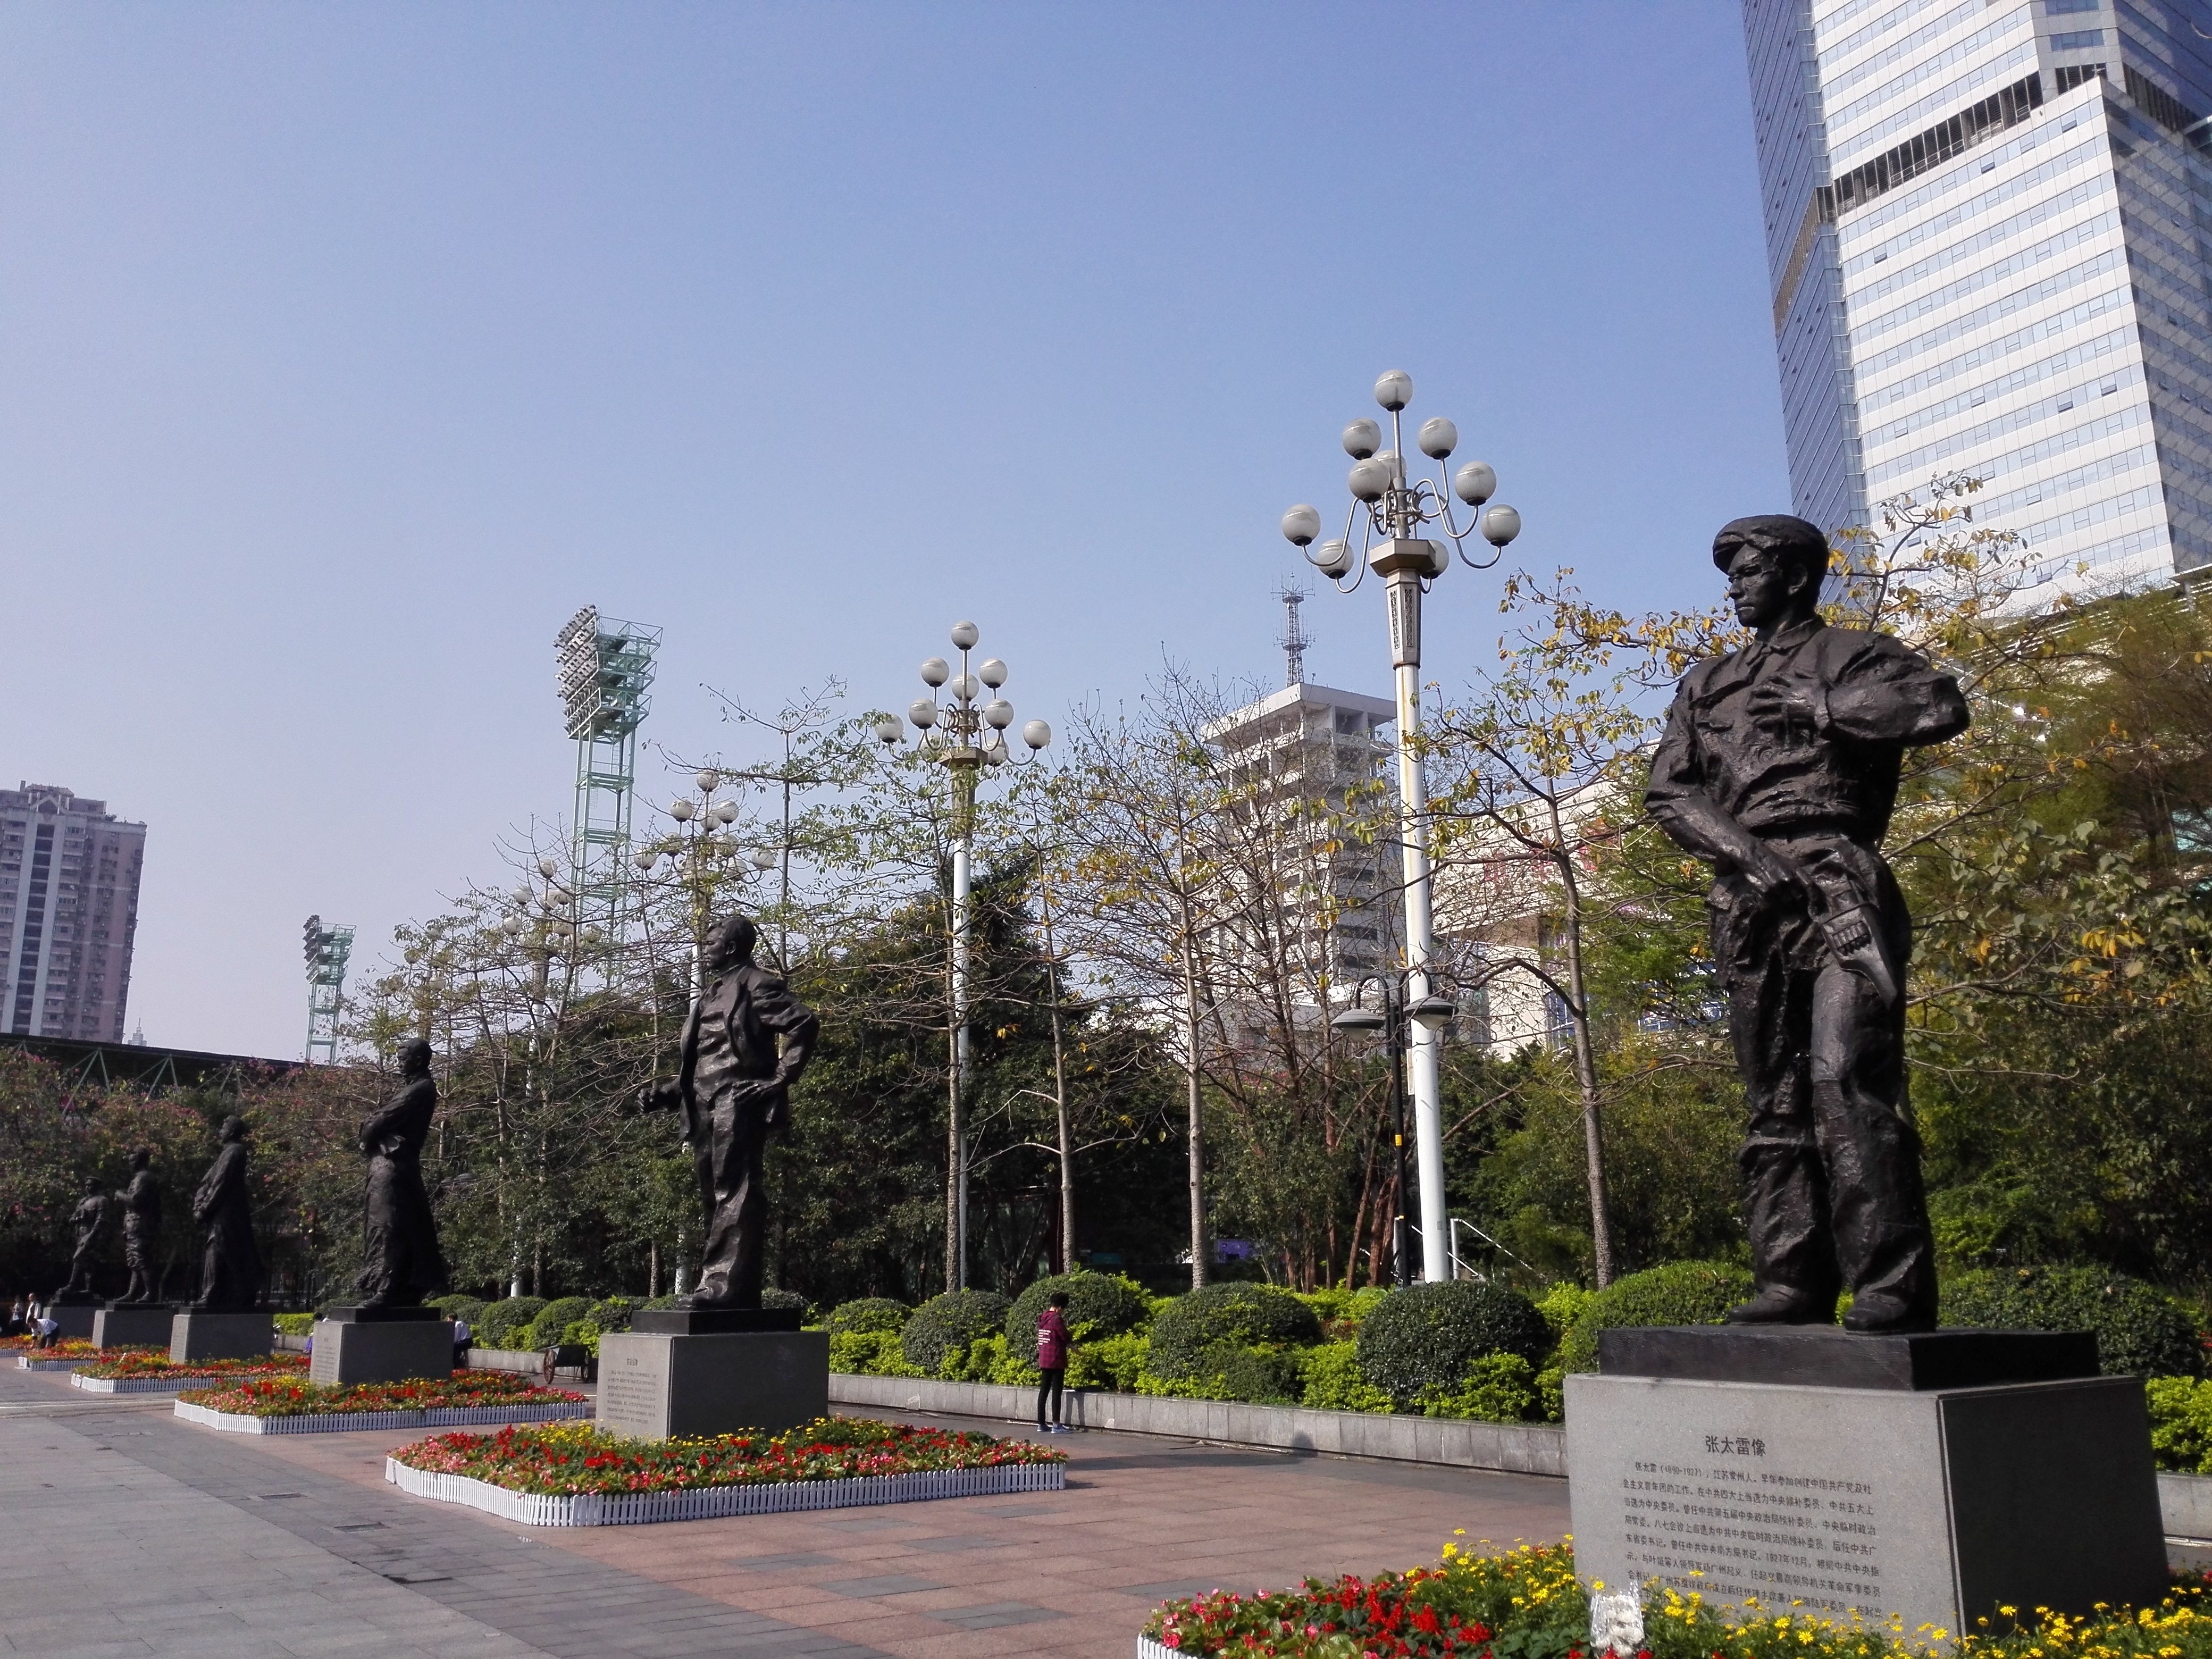 出地铁站后,马路对面为英雄广场;陵园内有原咨议局改建的广东近代史